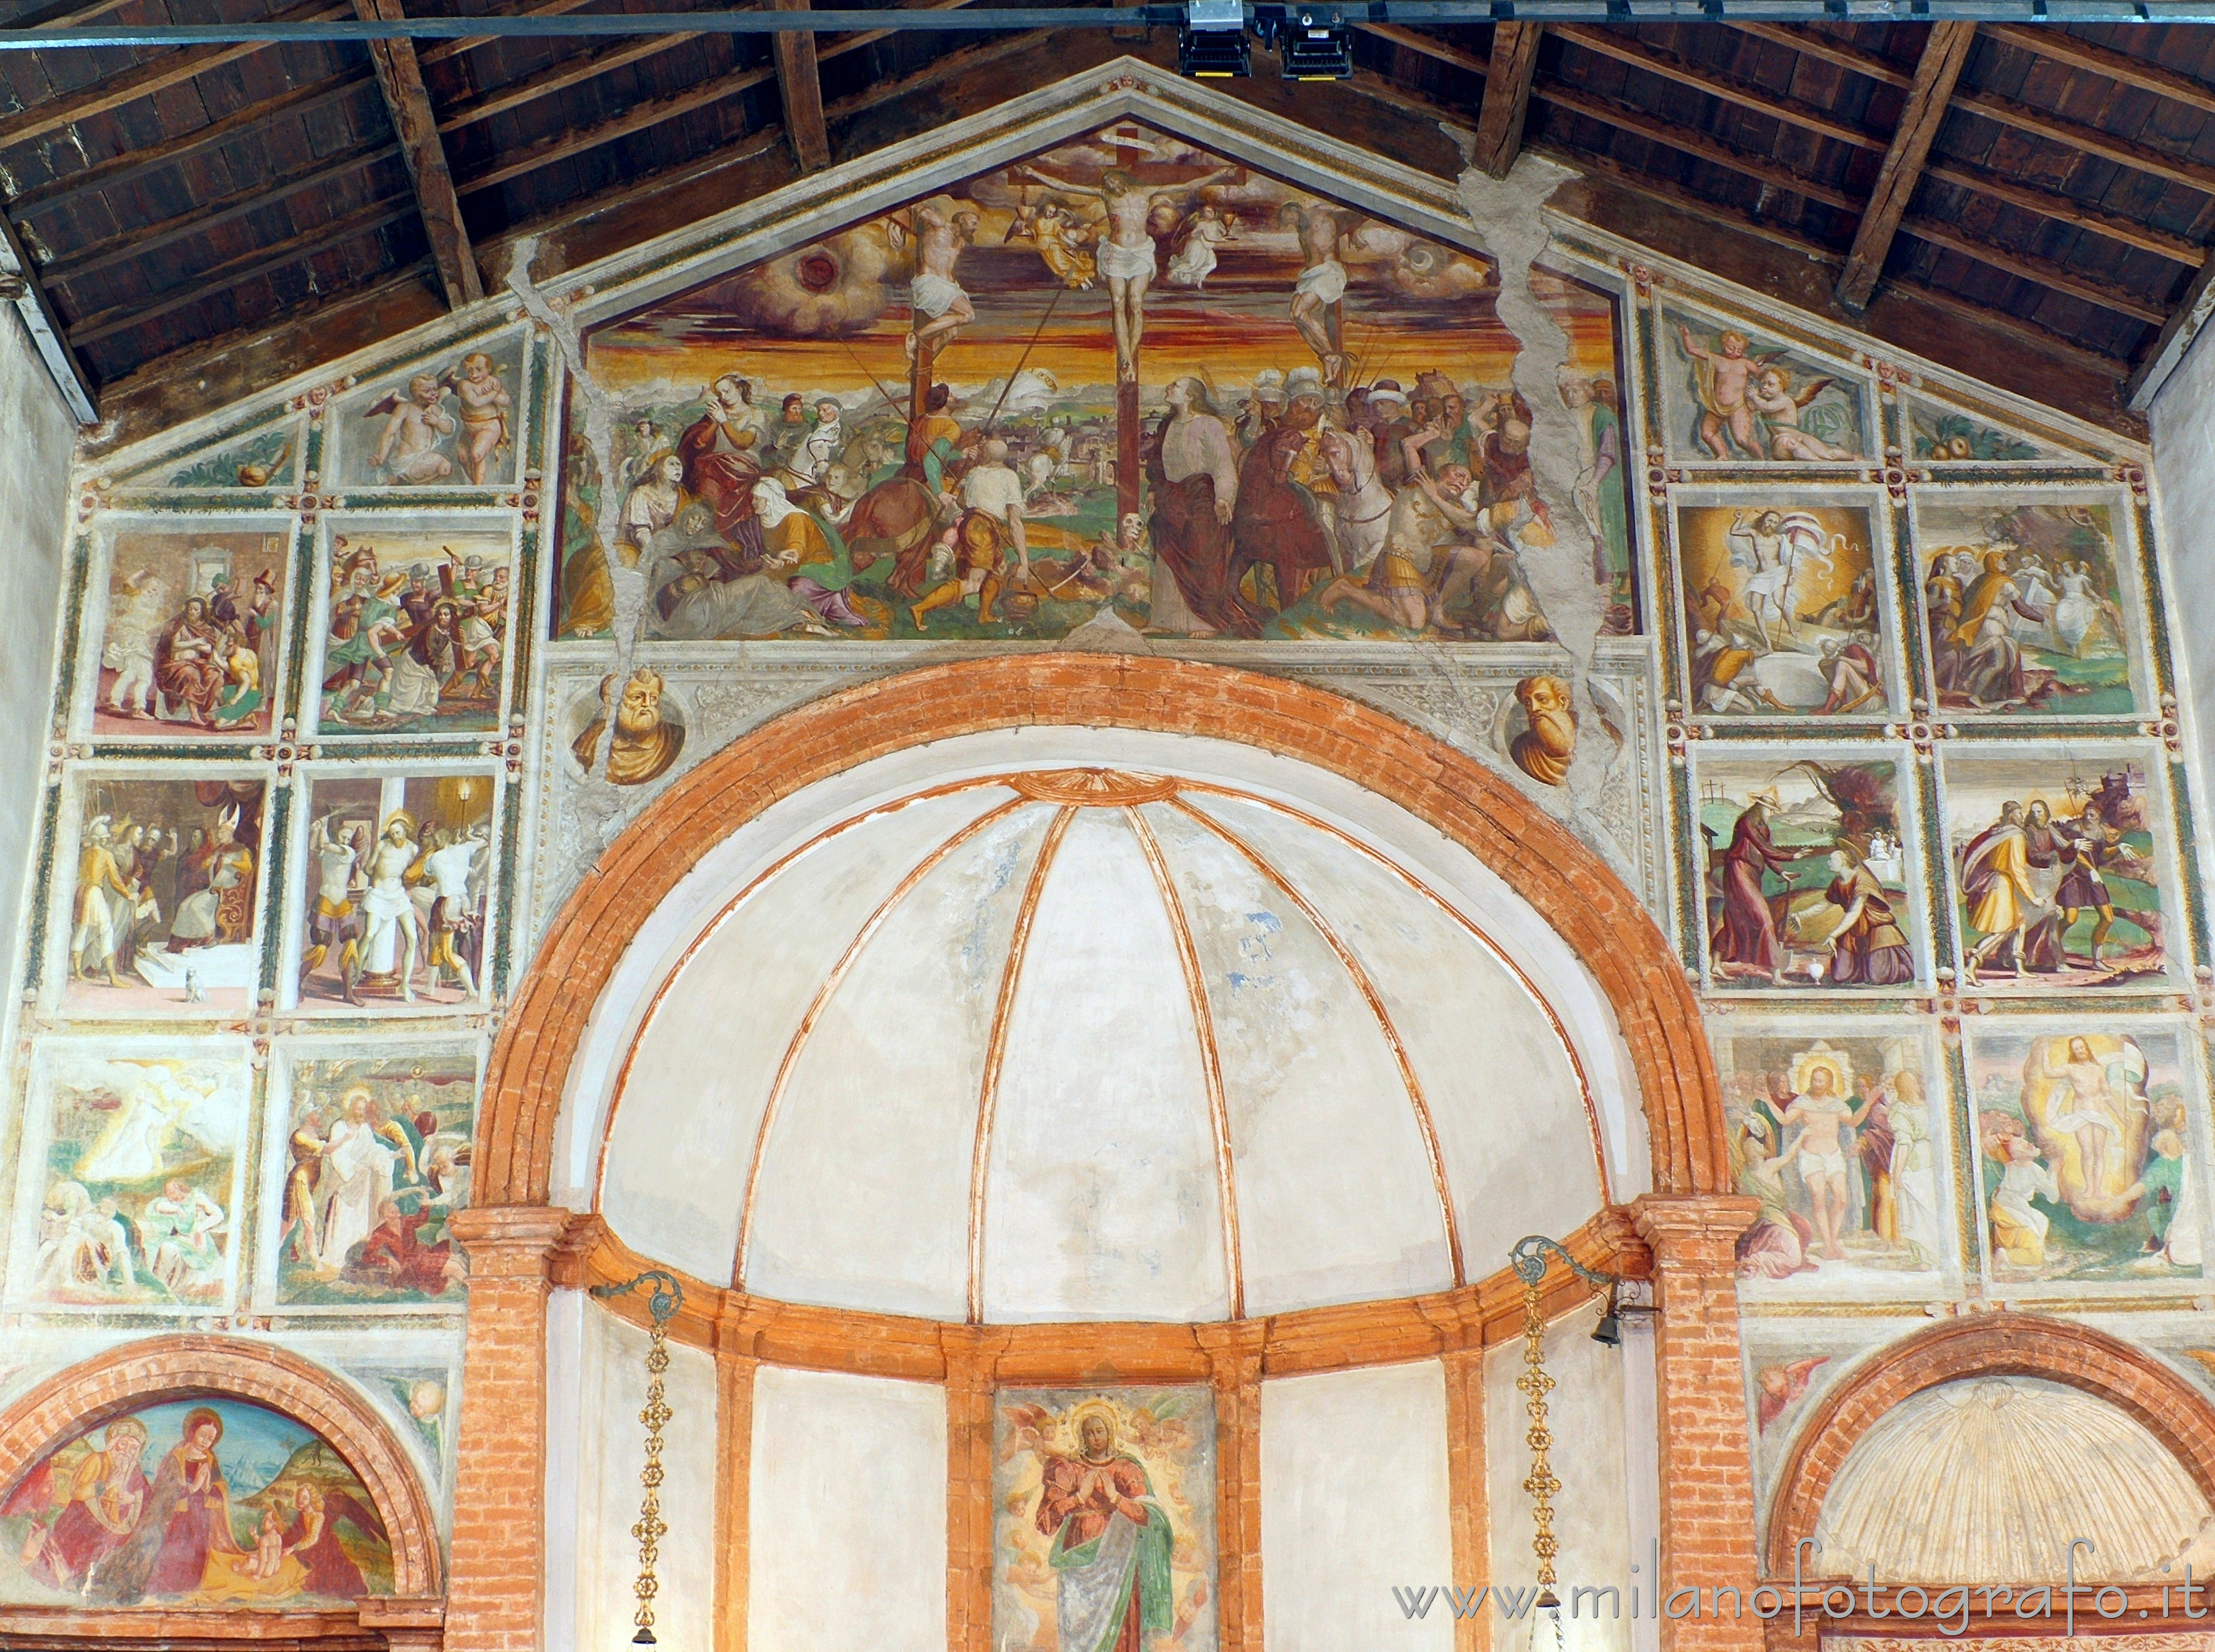 Cavenago di Brianza (Monza e Brianza): Ciclo di affreschi dedicati alla vita di Gesù nella Chiesa di Santa Maria in Campo - Cavenago di Brianza (Monza e Brianza)